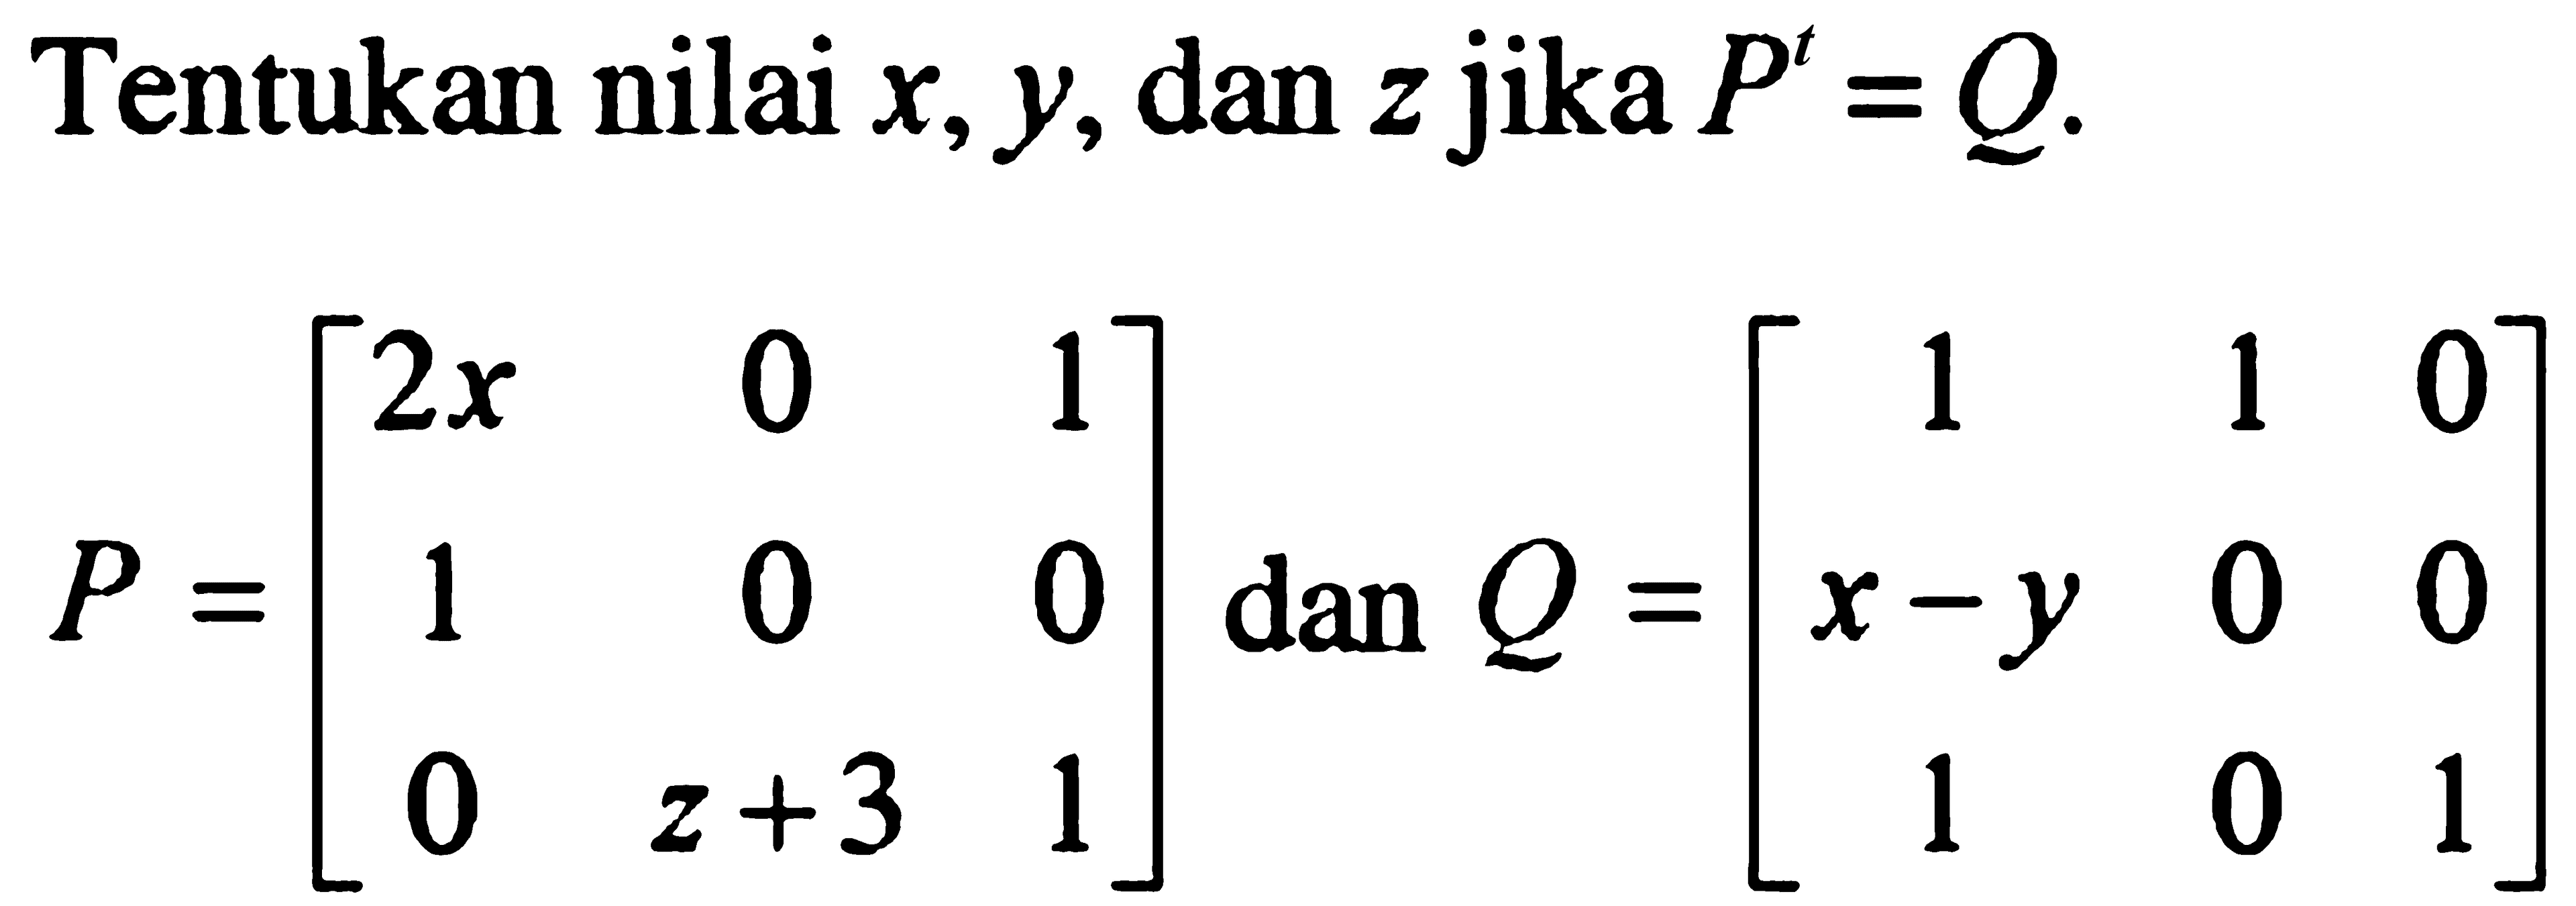 Tentukan nilai x, y, dan z jika P^t=Q P=[2x 0 1 1 0 0 0 z+3 1] dan Q=[1 1 0 x-y 0 0 1 0 1]